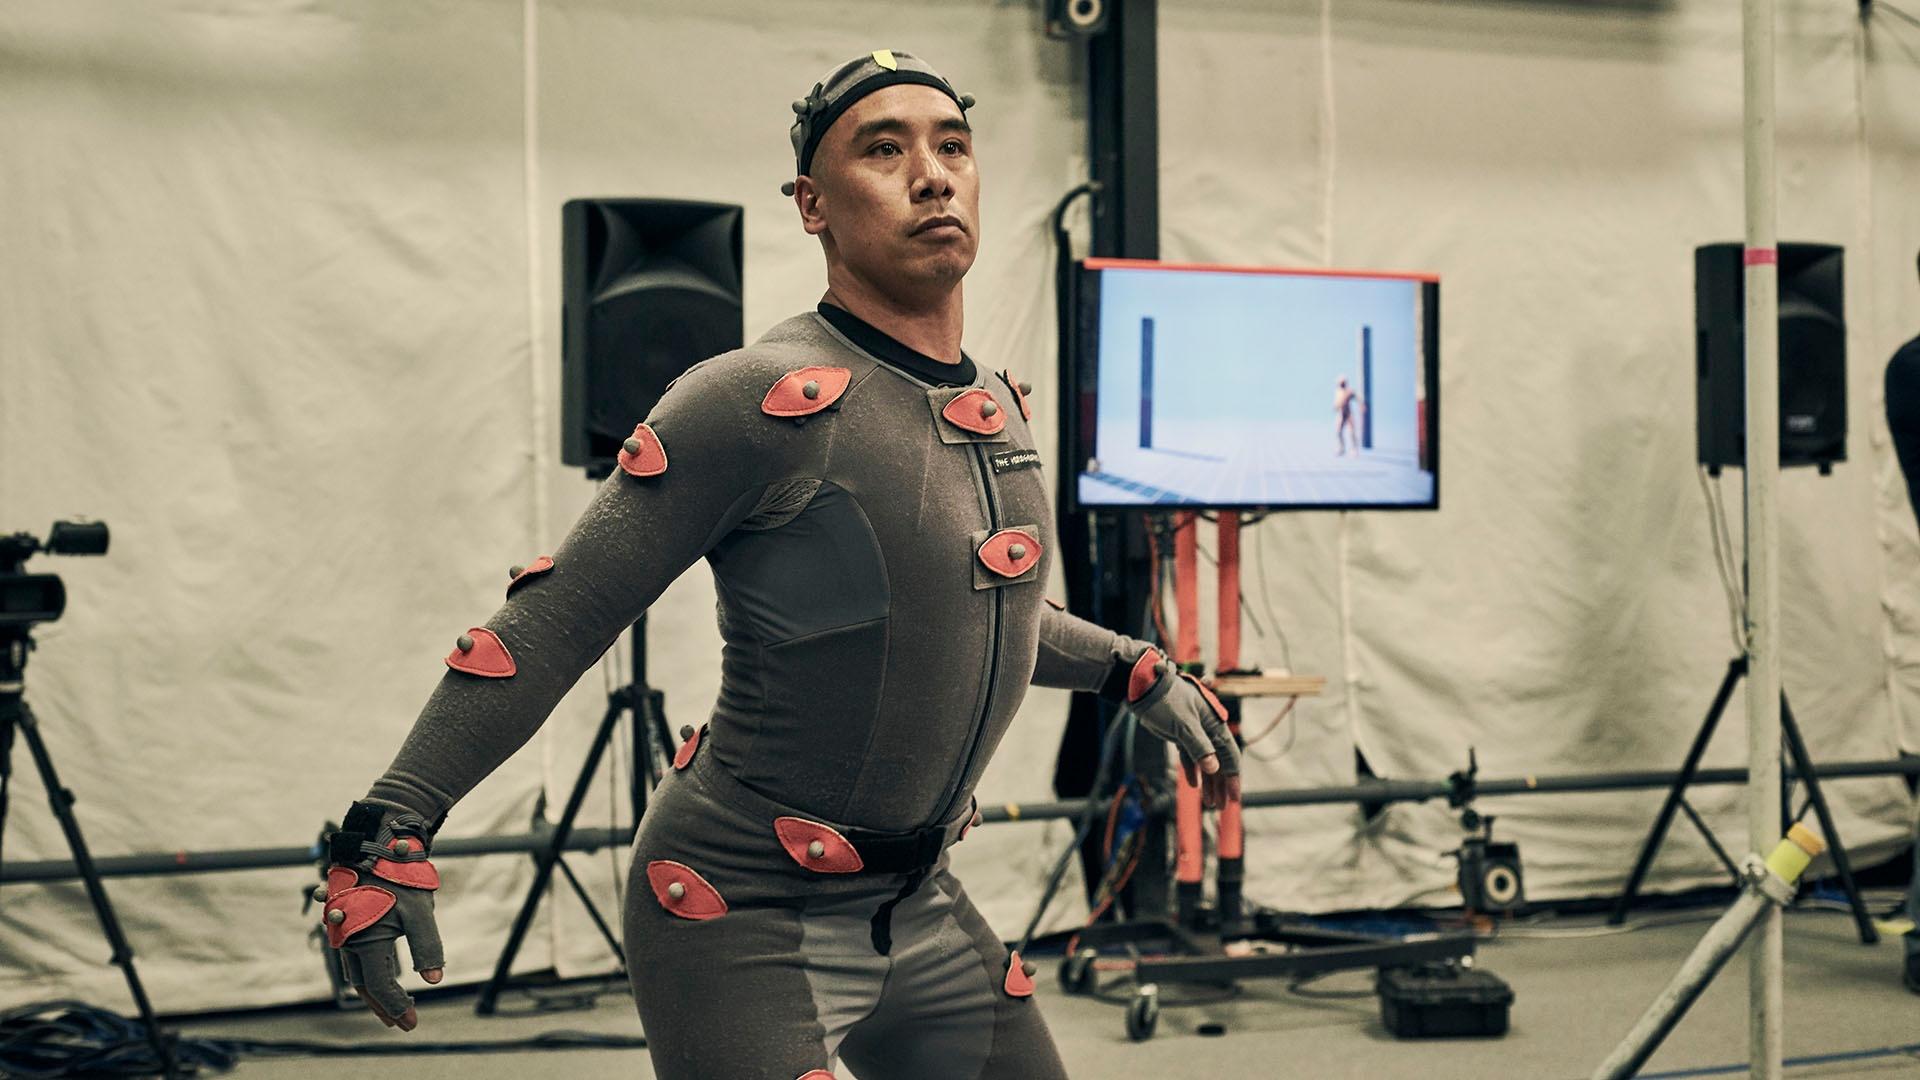 Nick Kellington (actor) wearing motion capture suit.